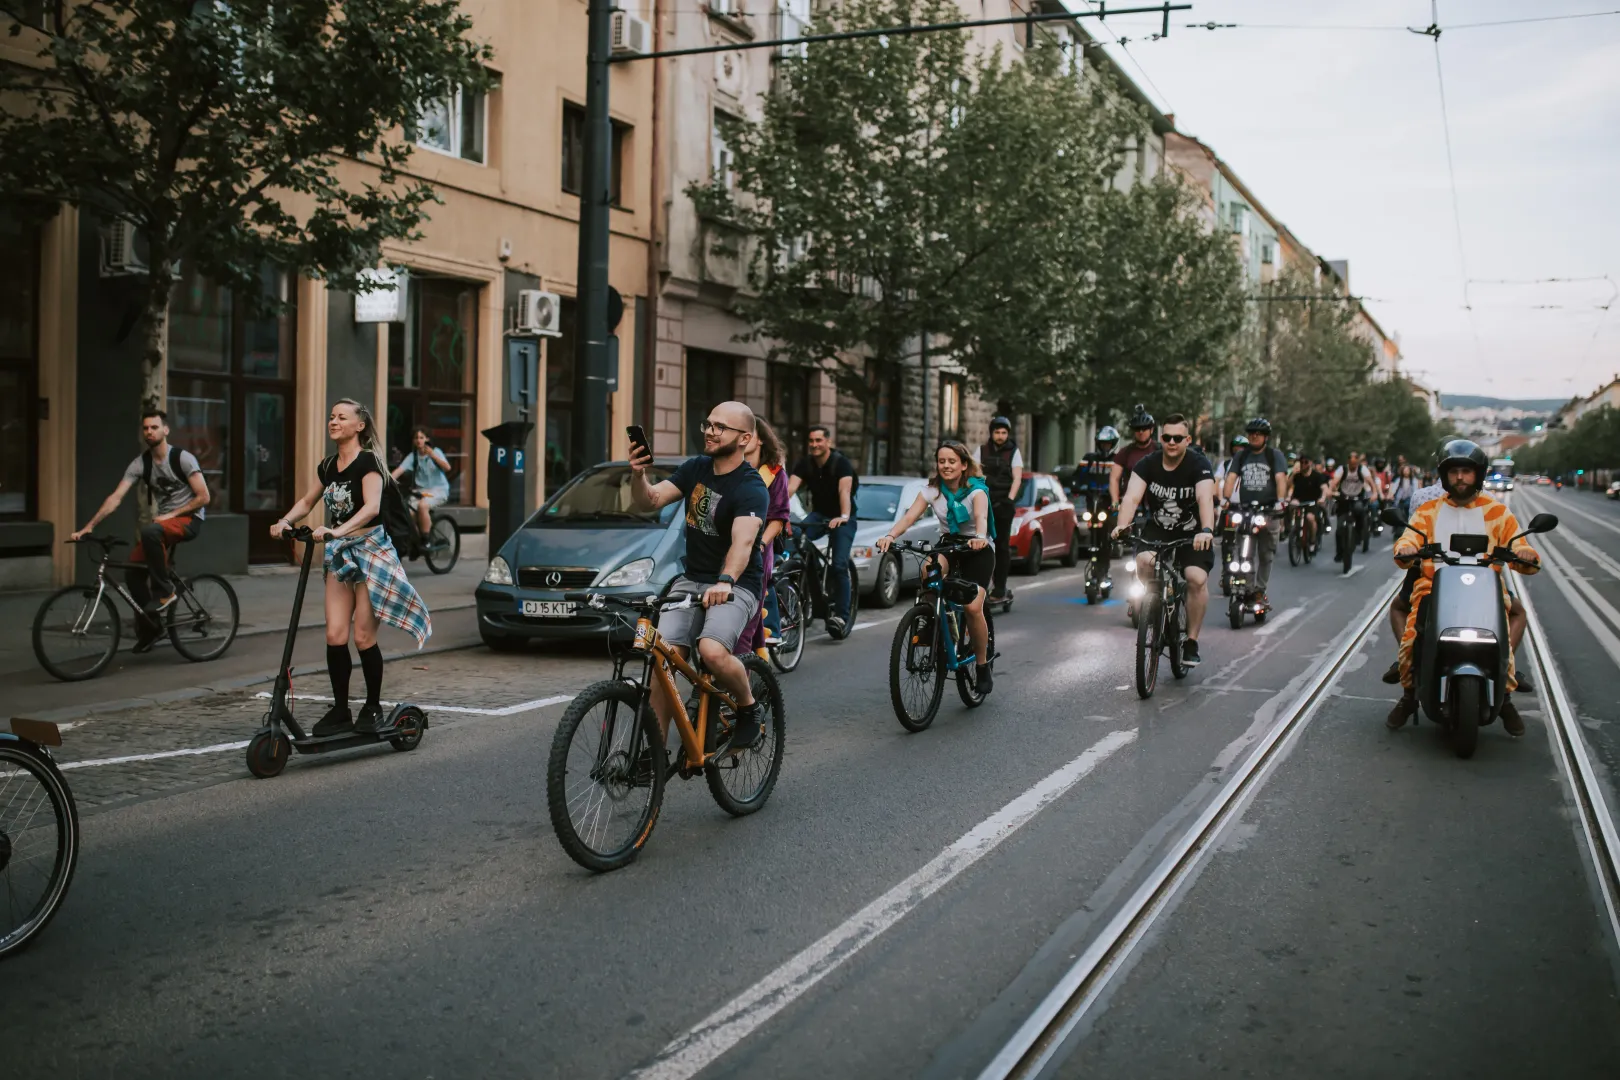 A mintegy két órán át tartó parádéhoz menet közbenis lehetett csatlakozni, a feltétel csak akerékpáros közlekedés szabályainak a betartása volt. Fotó: Moldvai Anikó